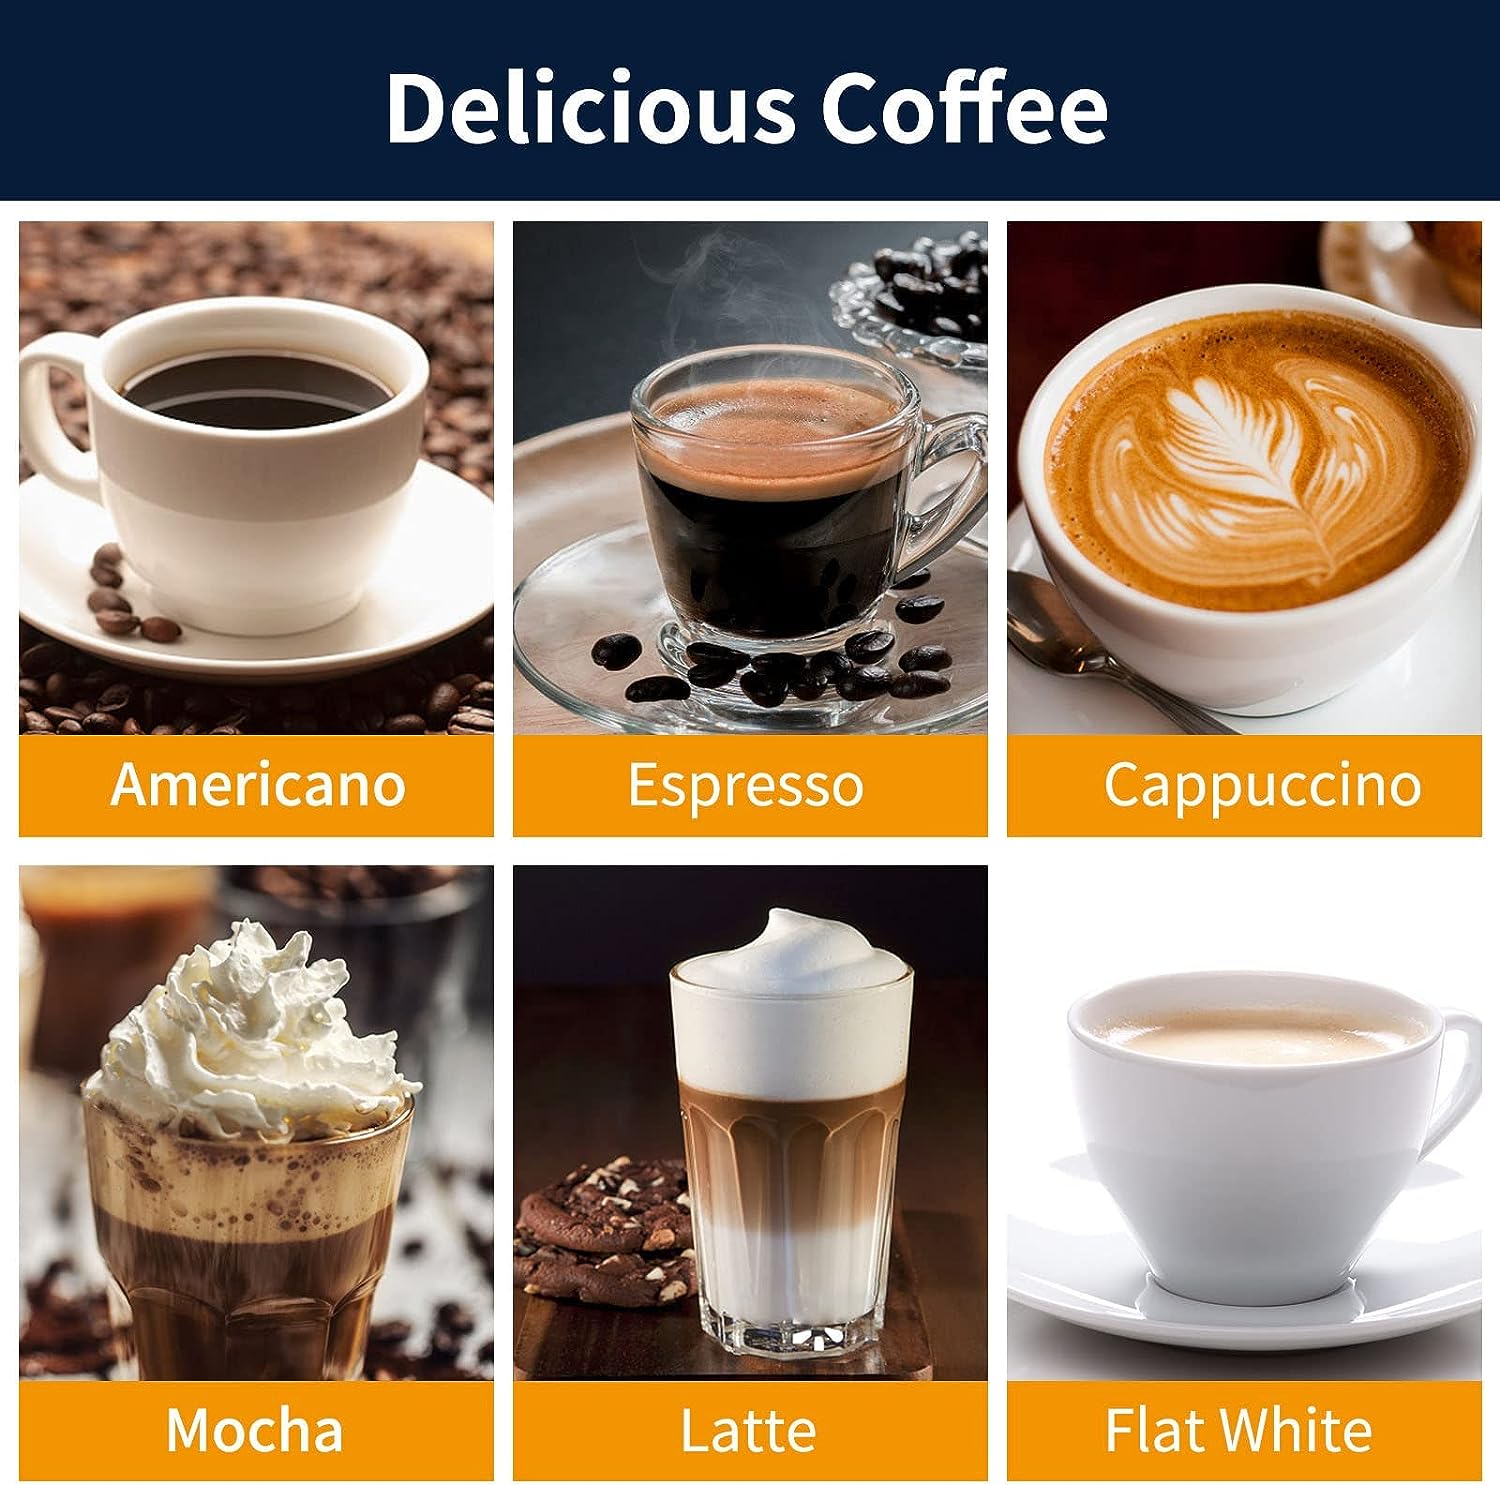 20 Bar Pump Espresso and Cappuccino latte Maker Review